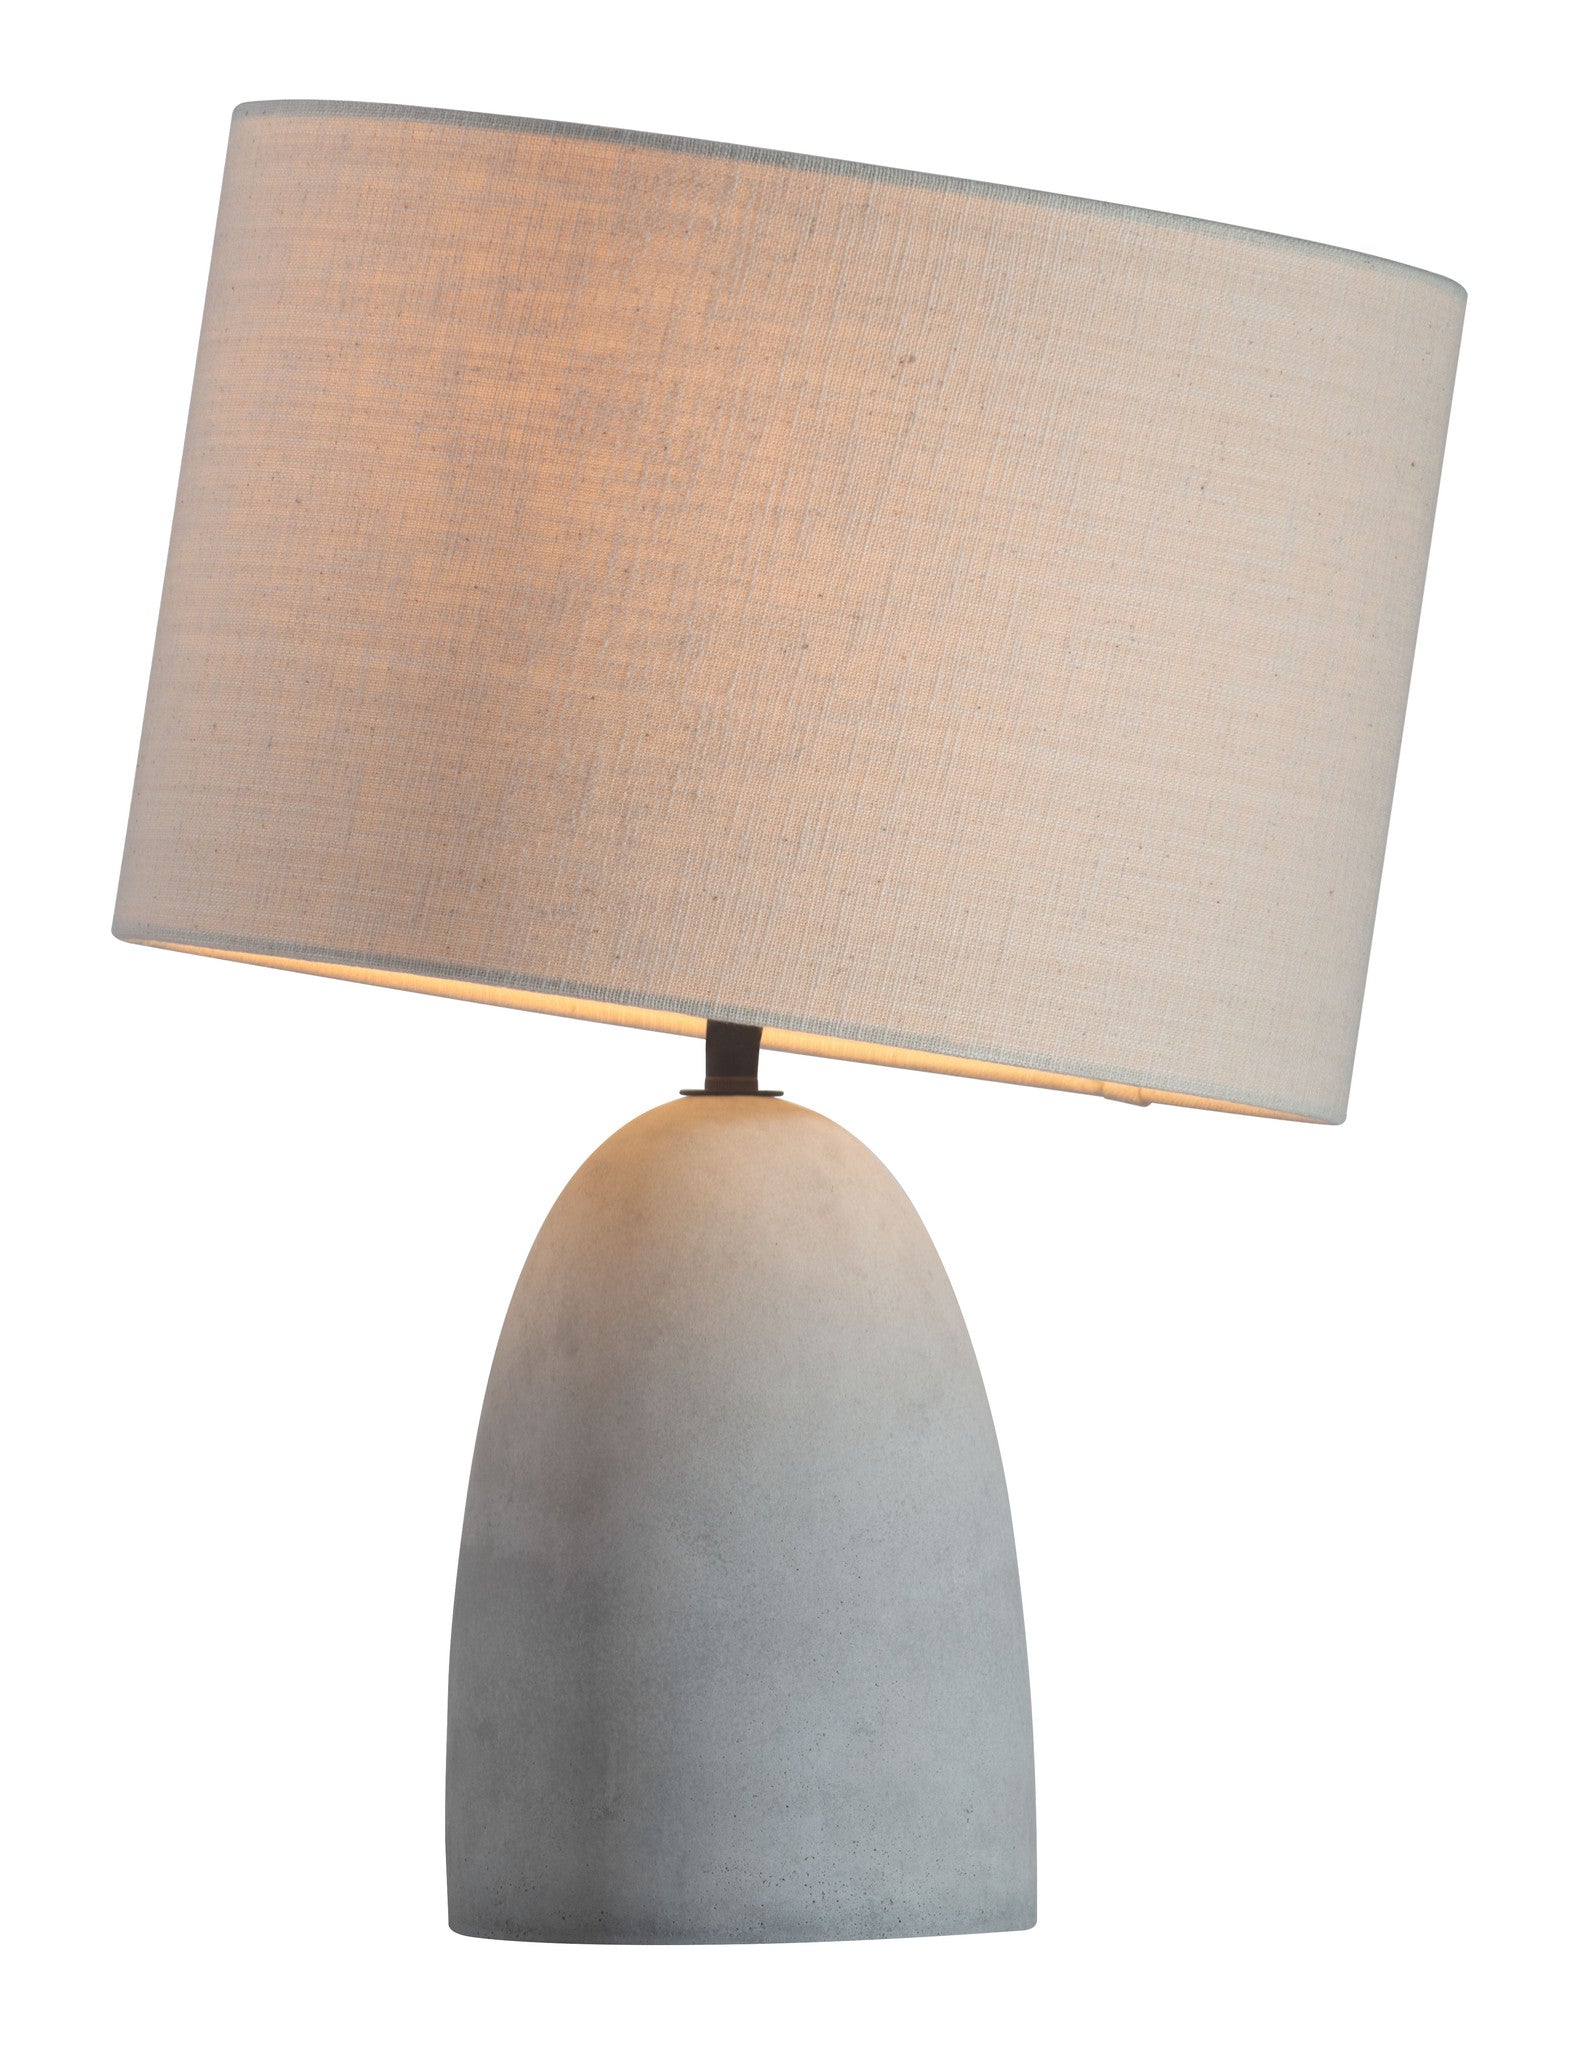 Viktor Table Lamp Beige/Concrete Gray